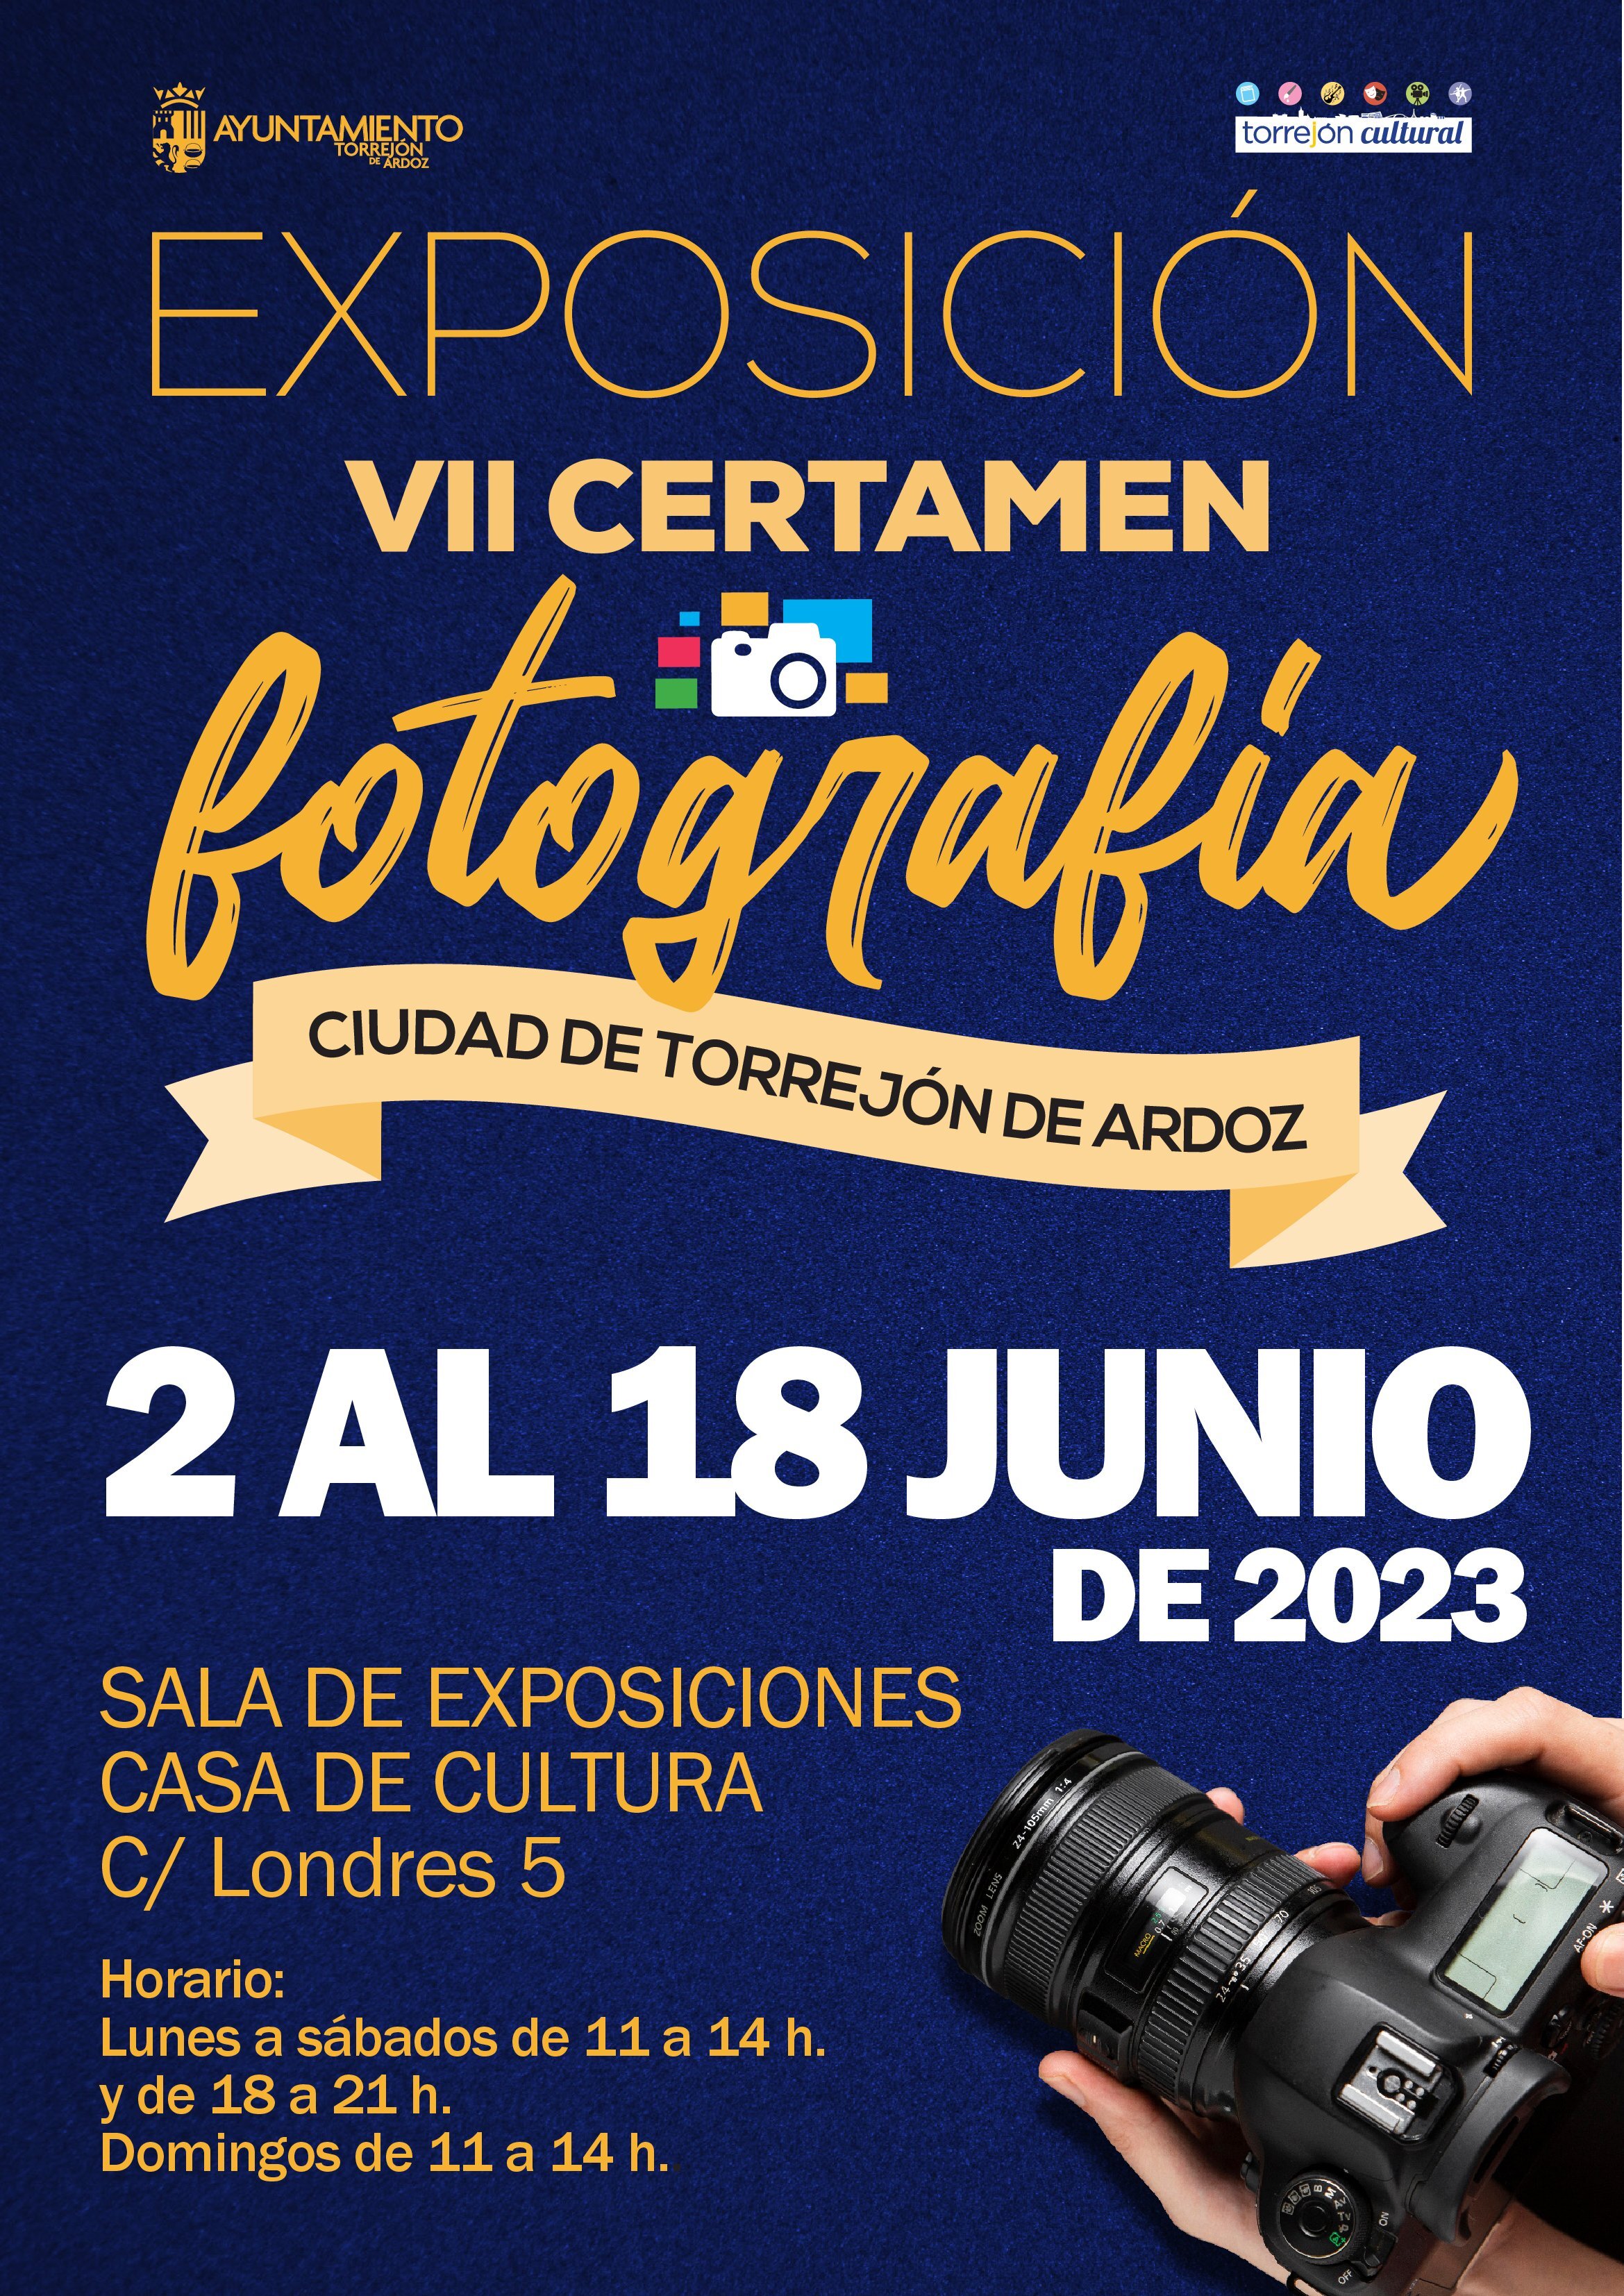 Exposición VII Certamen de Fotografía Ciudad de Torrejón de Ardoz